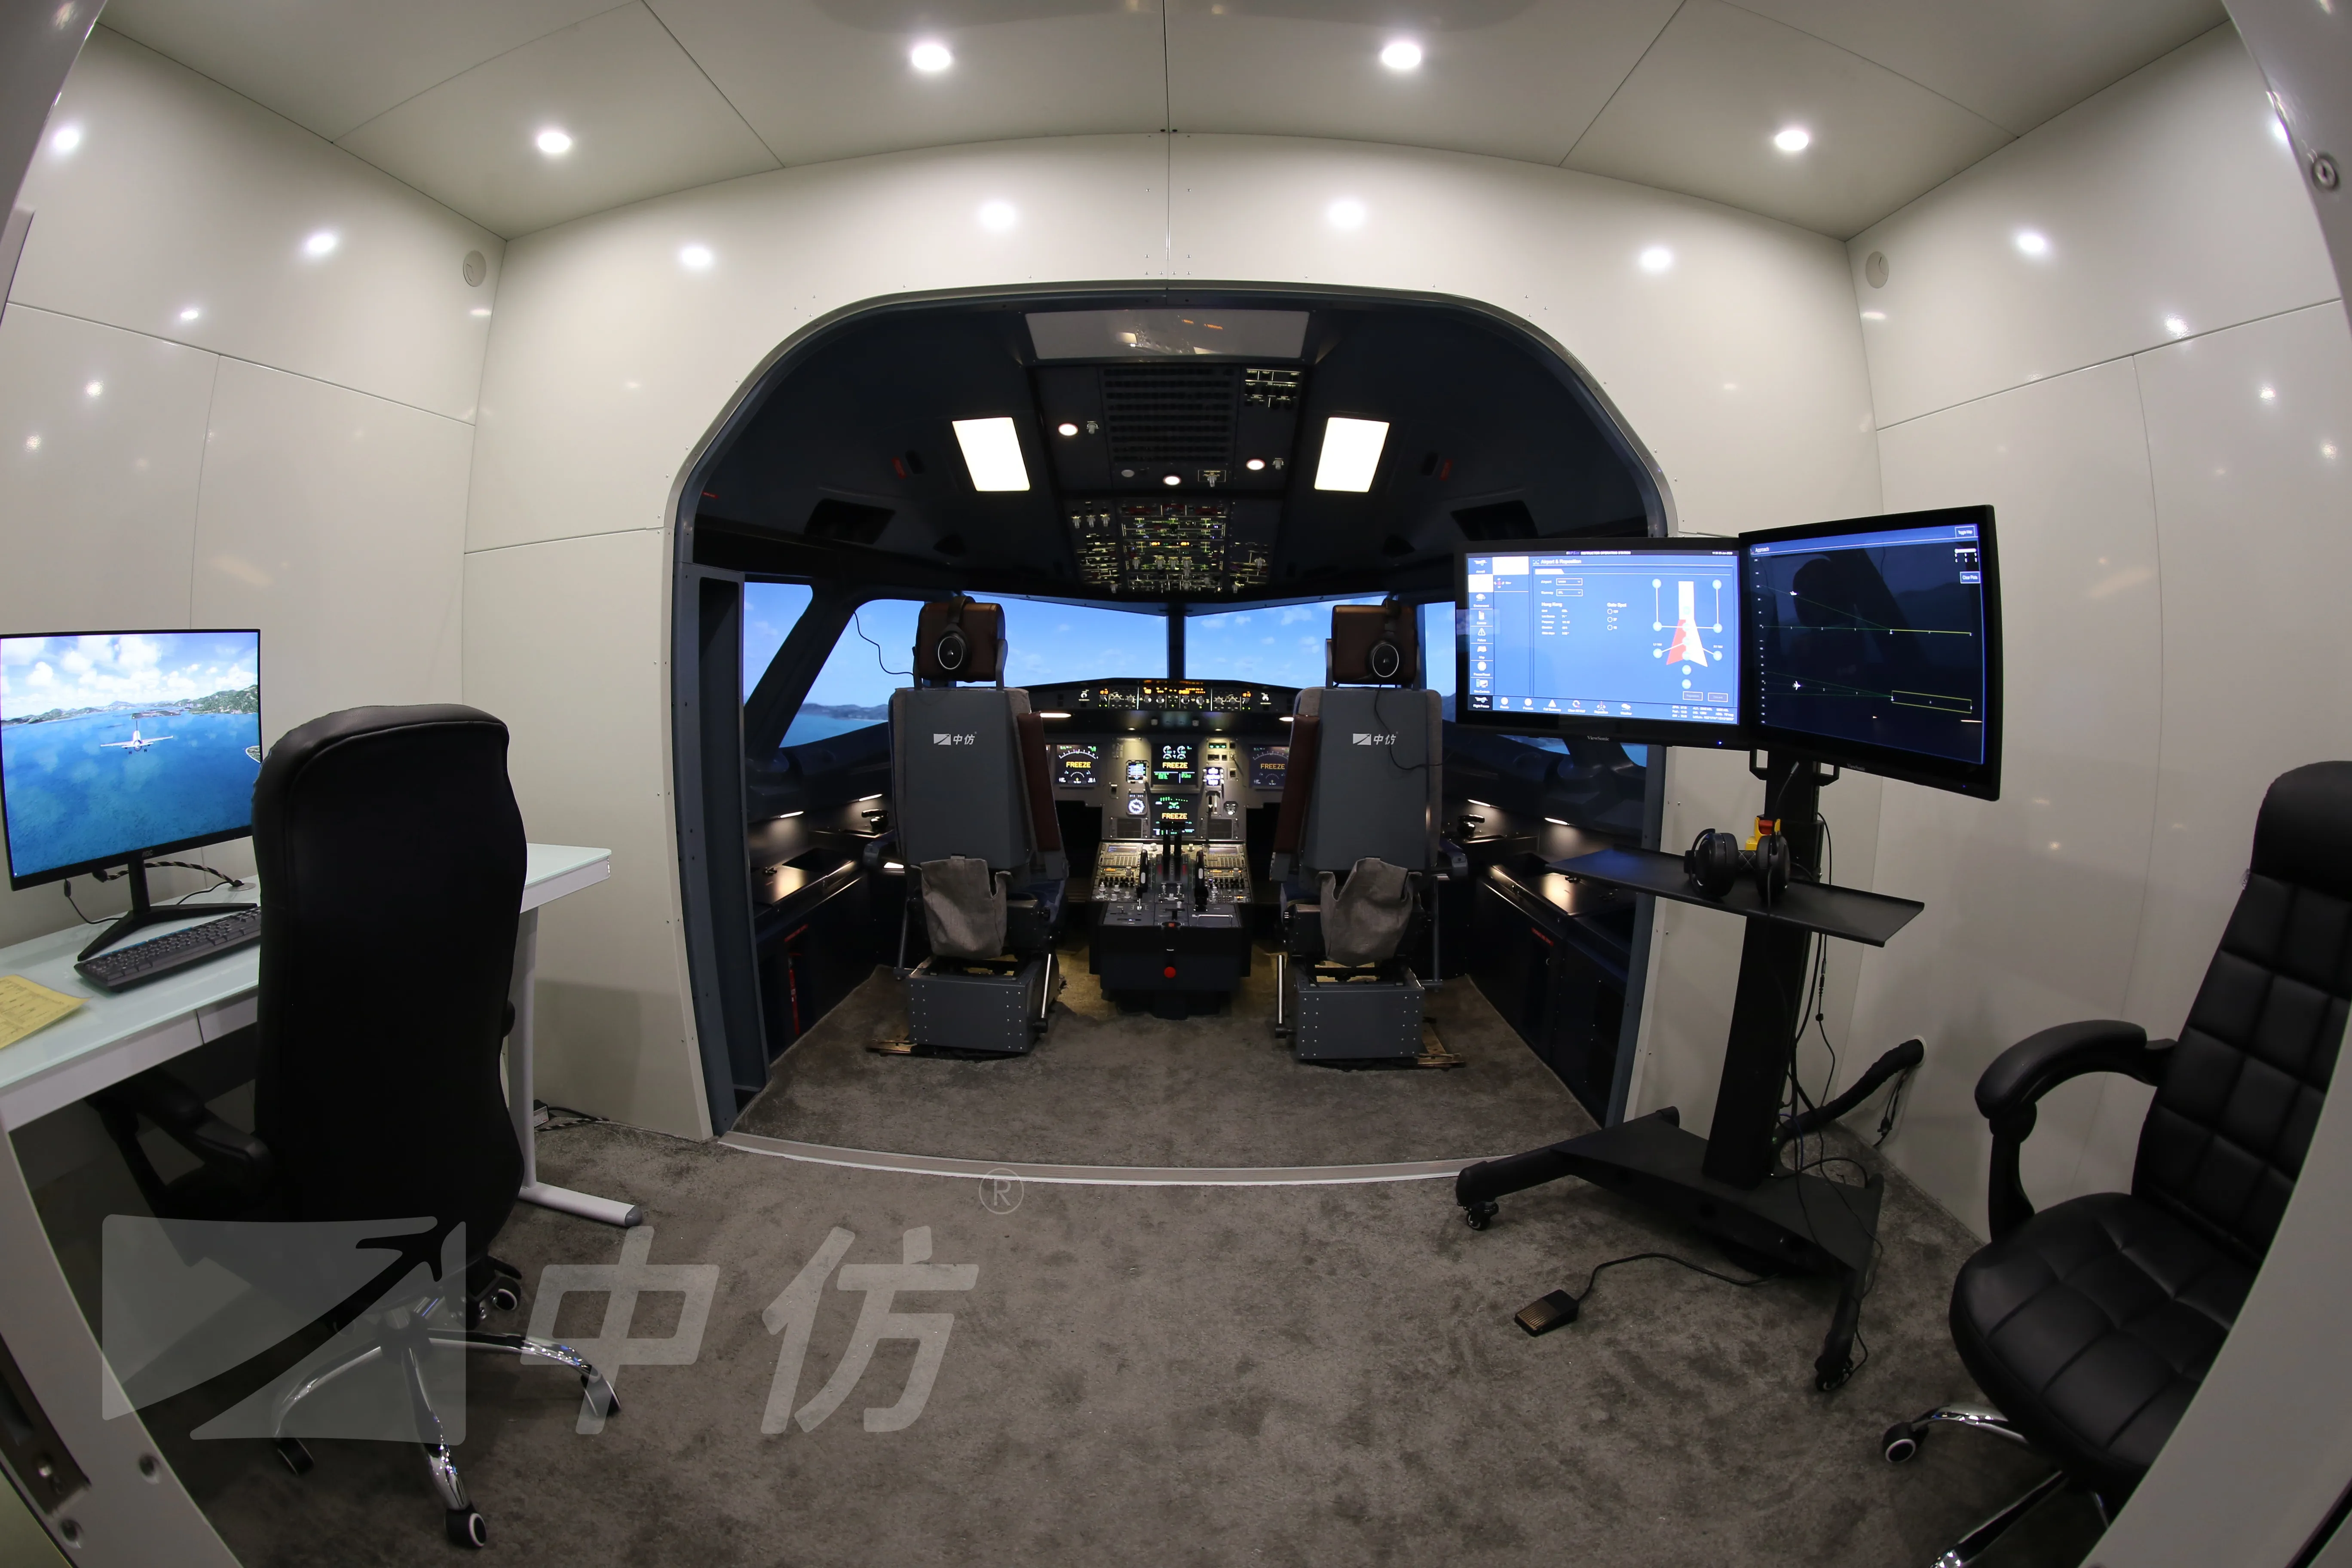 airbus flight simulator